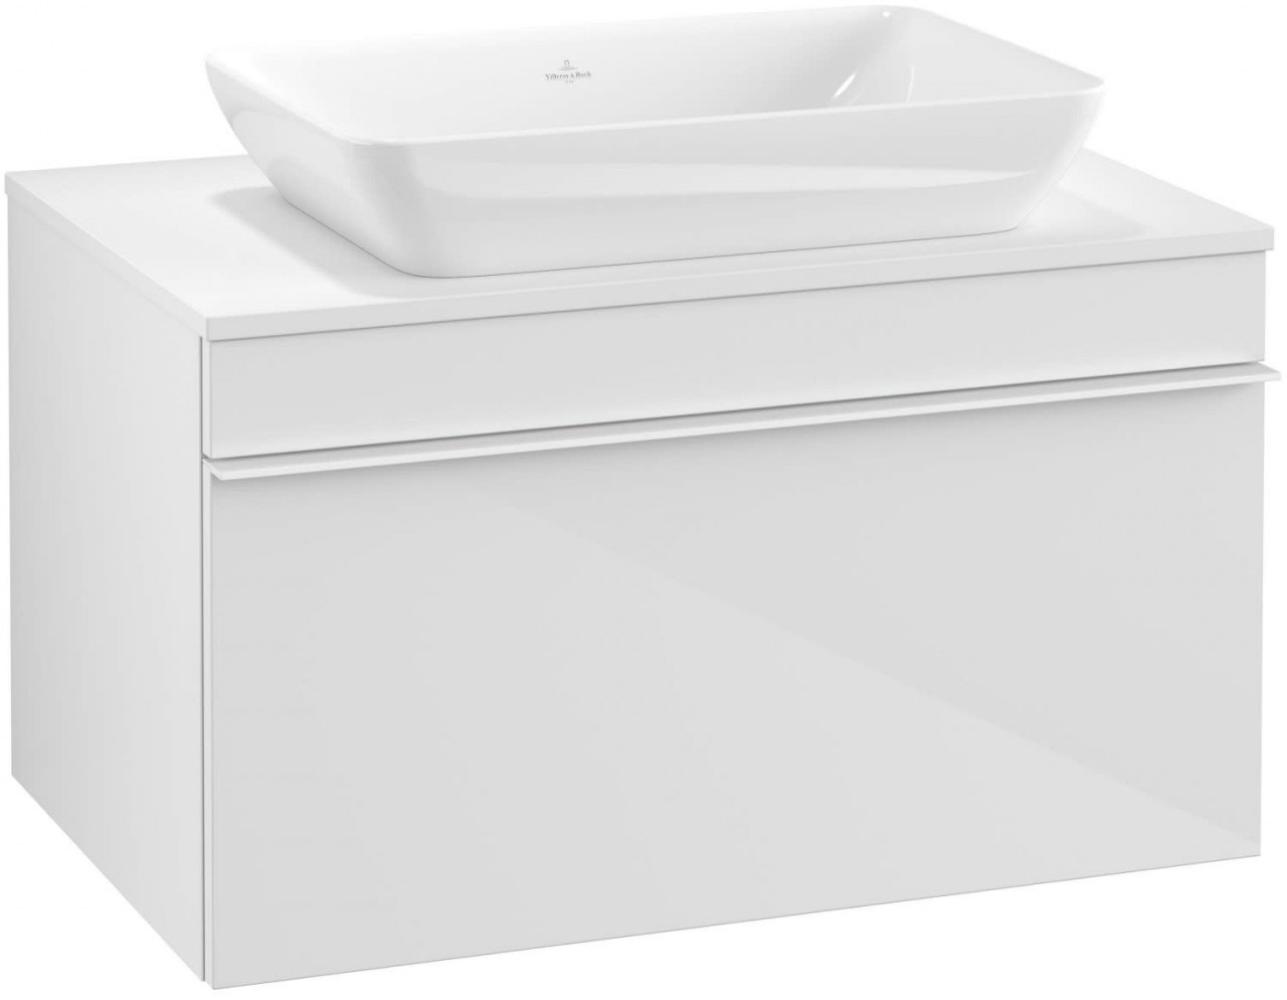 Villeroy & Boch VENTICELLO Waschtischunterschrank 75 cm breit, Weiß, Griff Weiß Bild 1